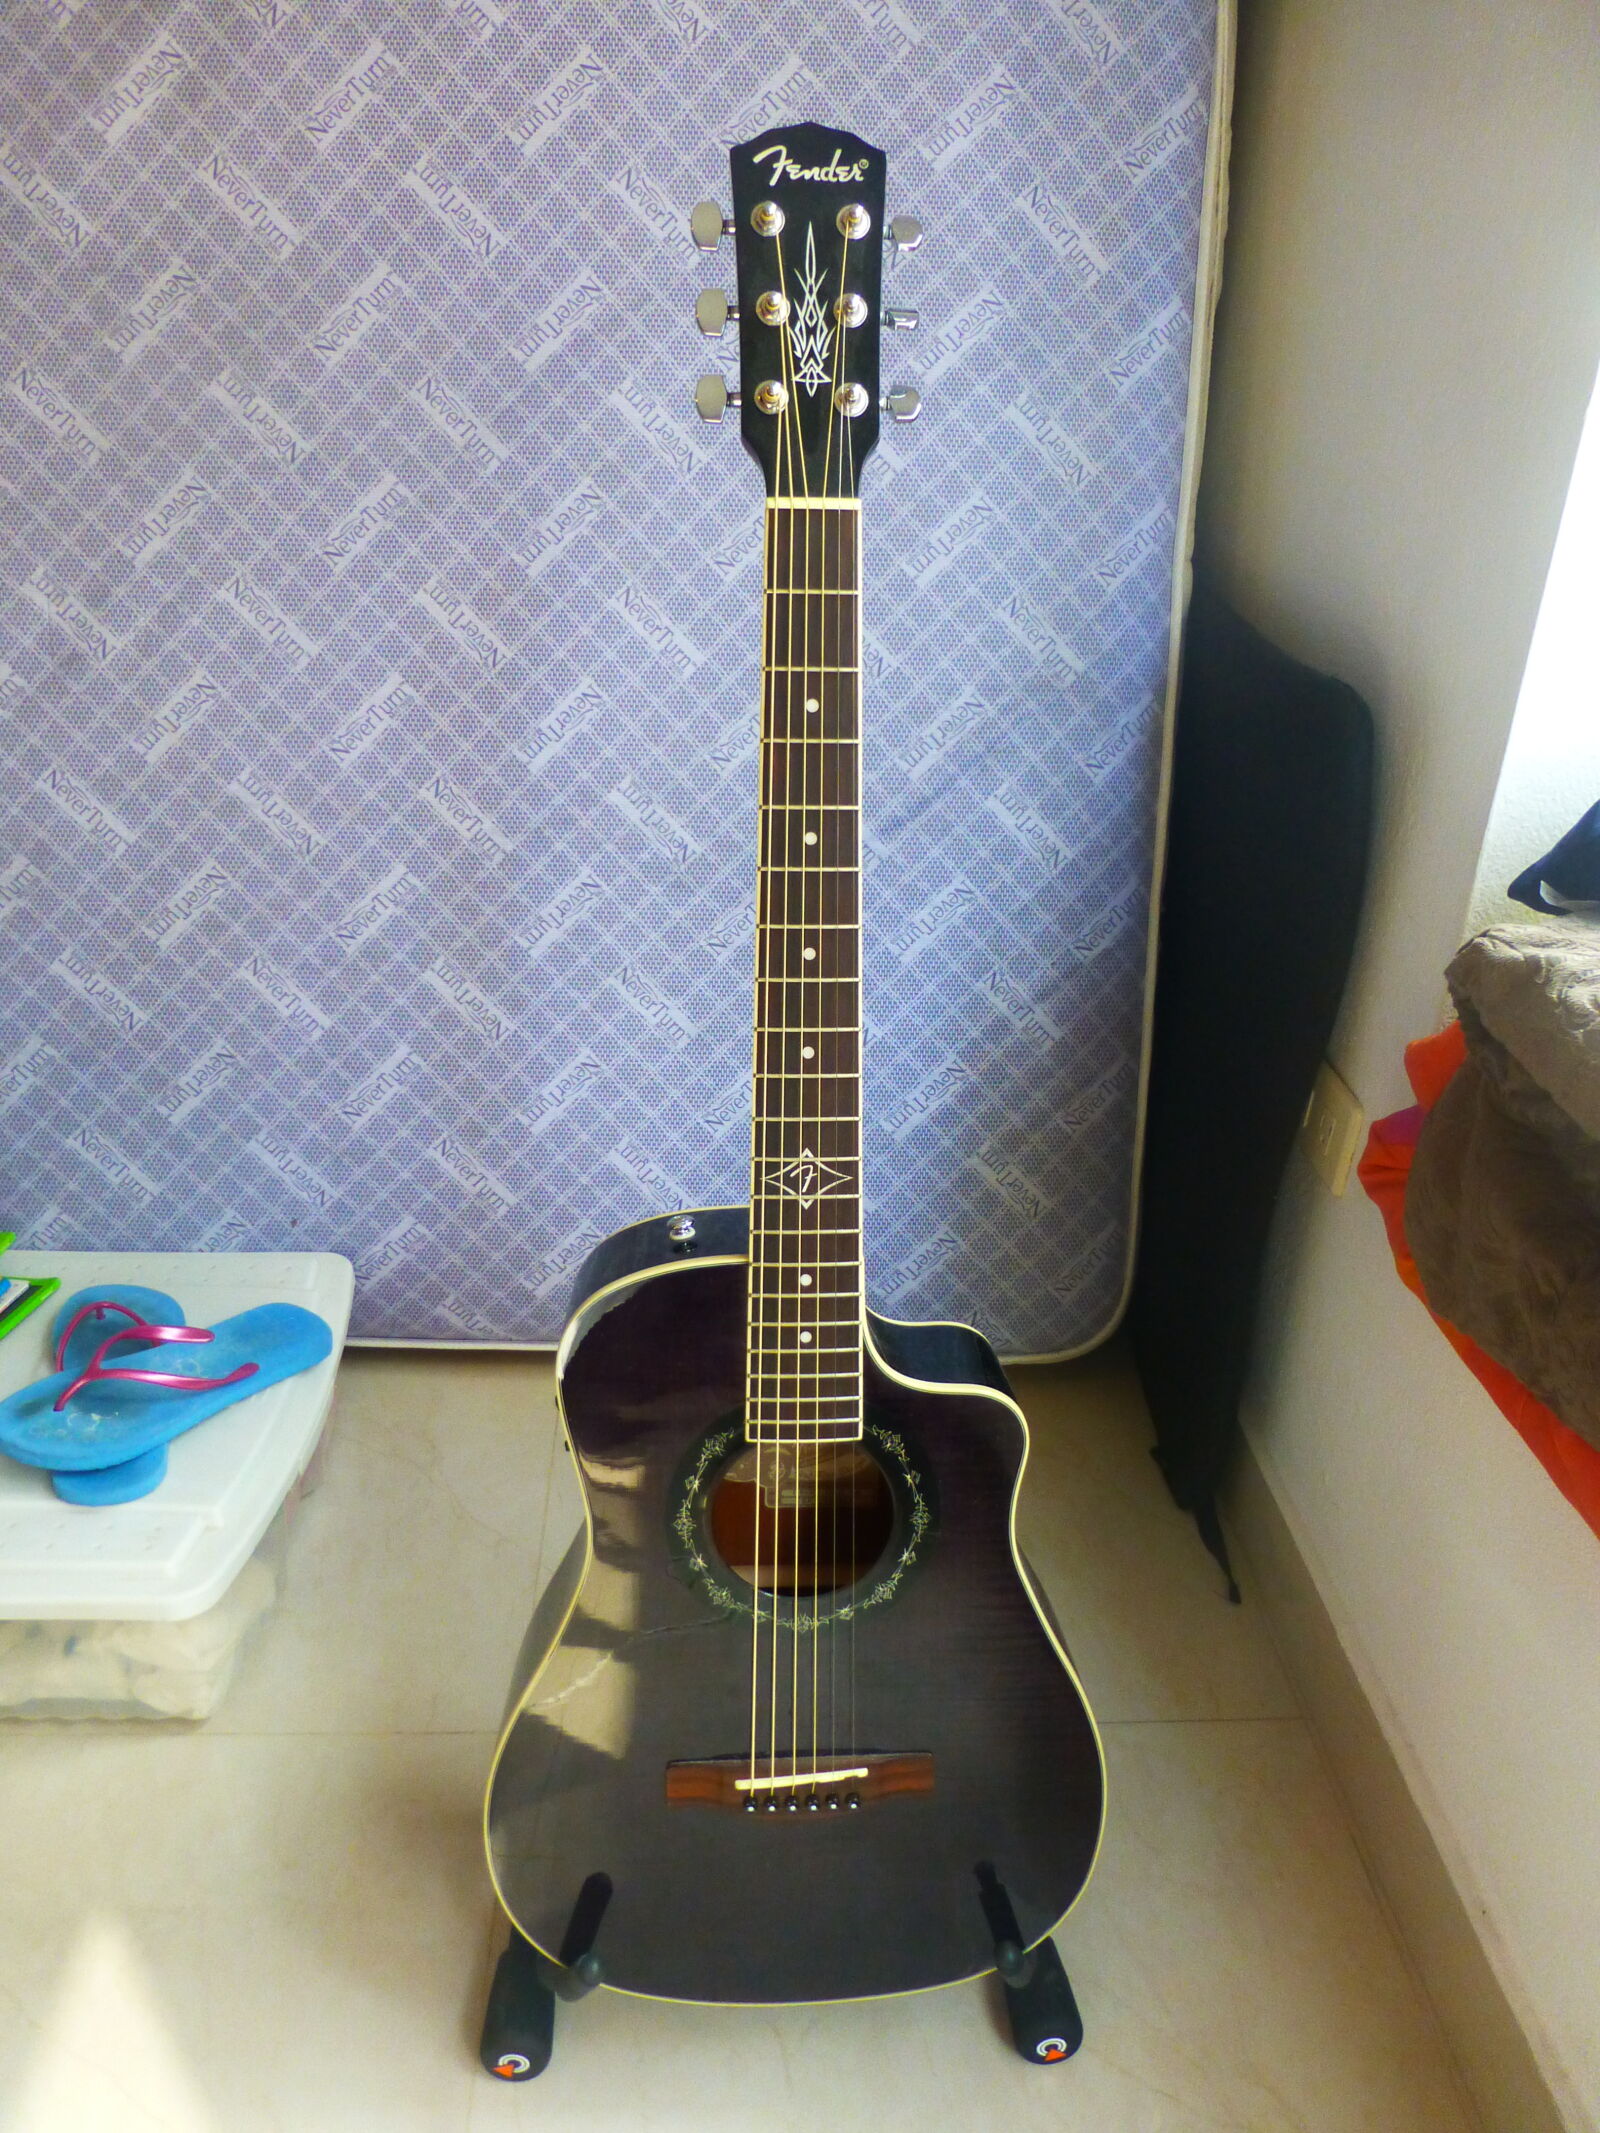 Panasonic Lumix DMC-ZS20 (Lumix DMC-TZ30) sample photo. Acoustic, guitar, bedroom, guitar photography